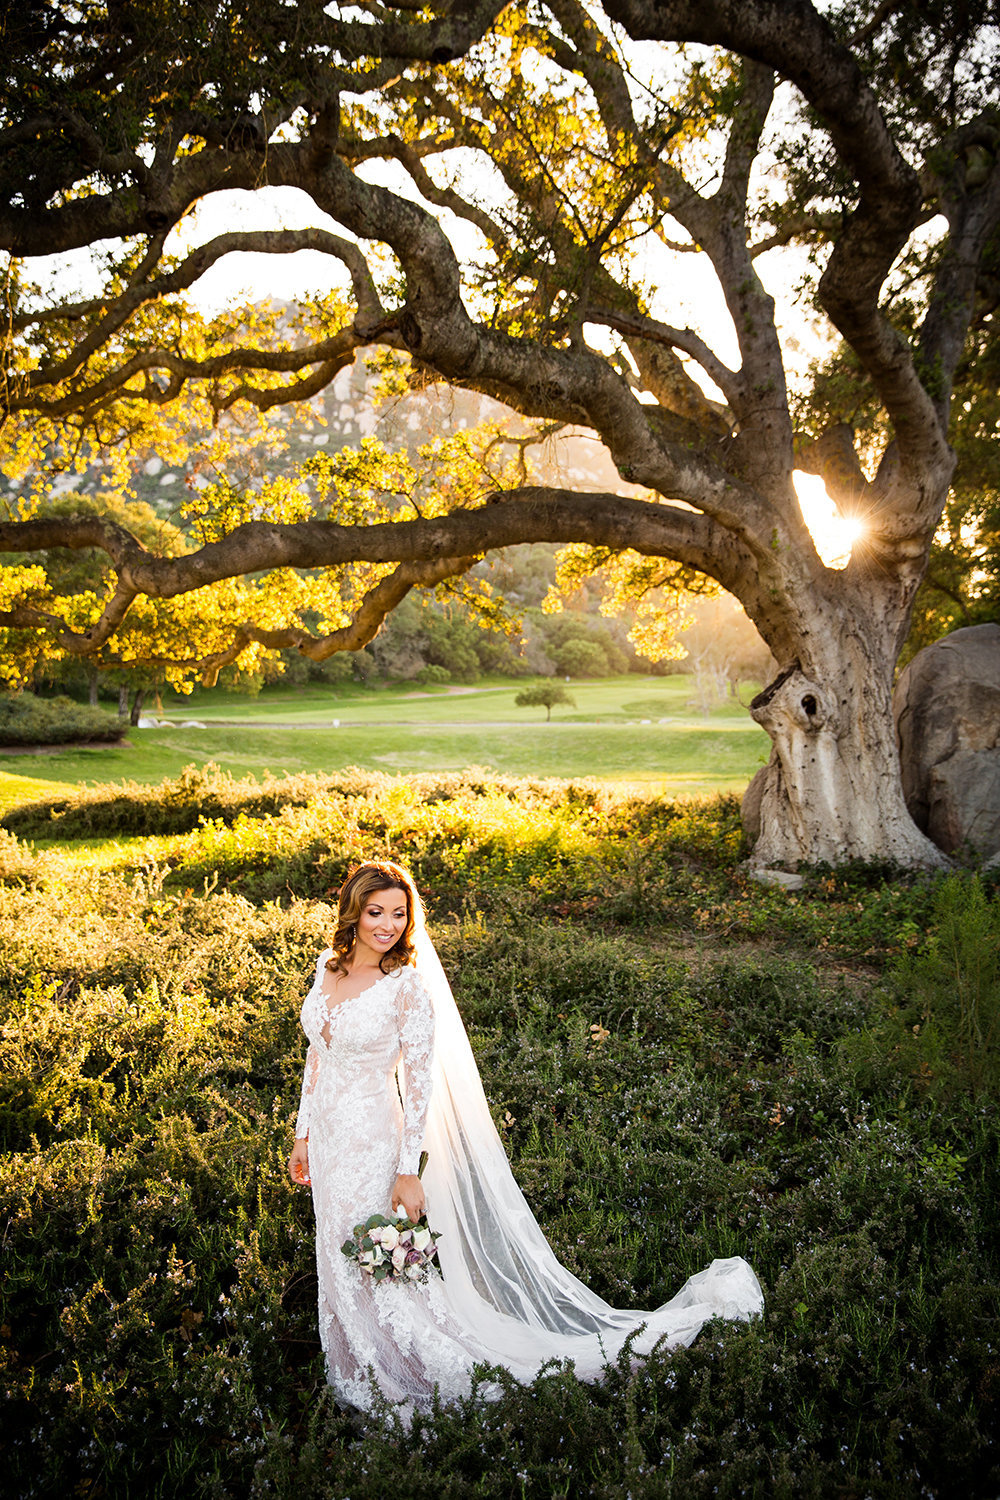 Mt Woodson wedding photod bride outdoors under tree